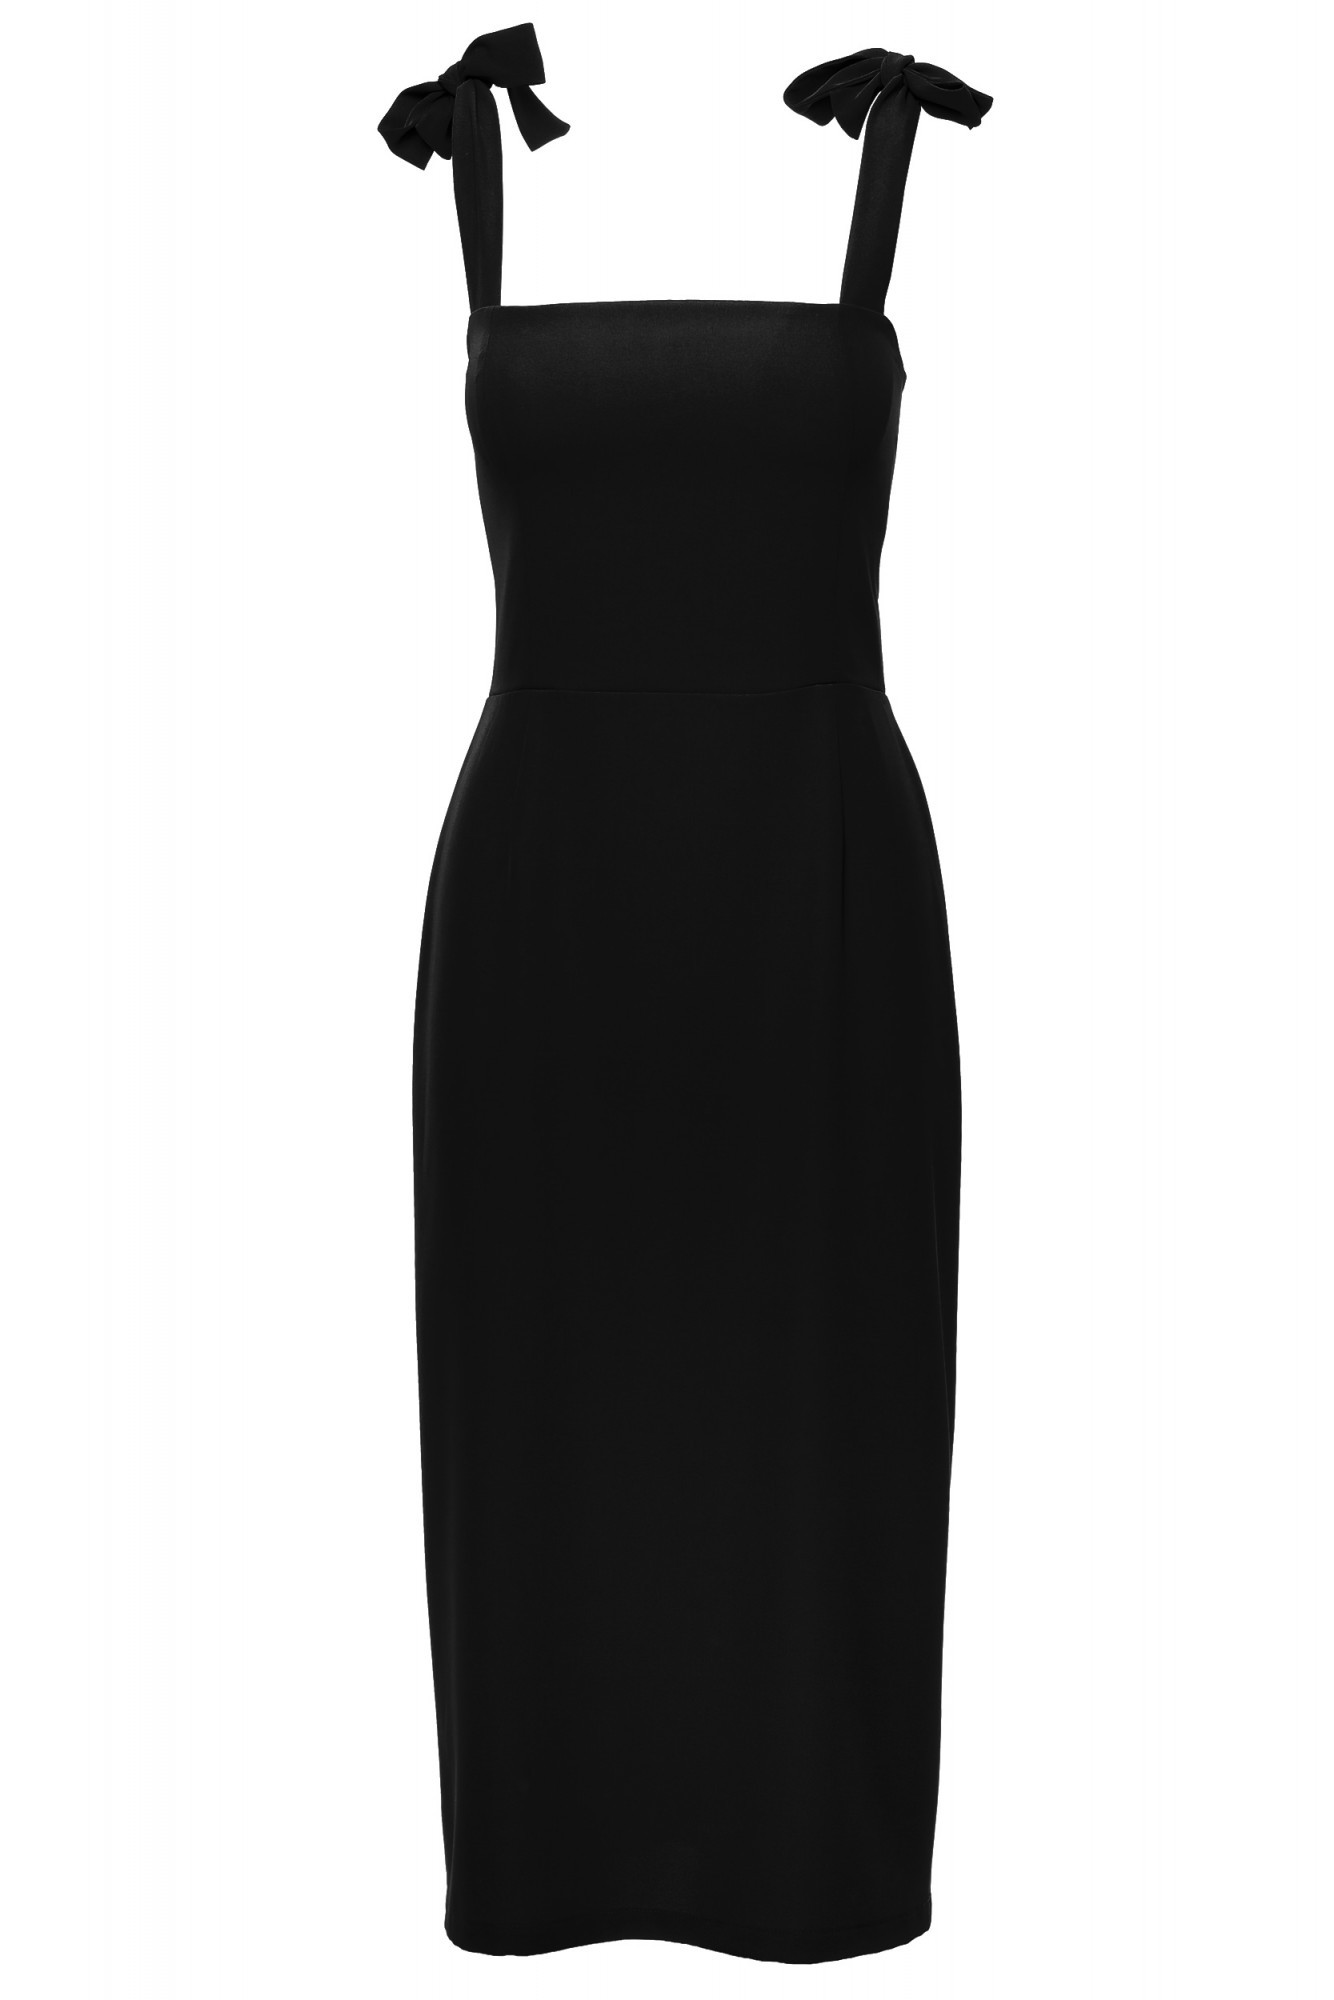 Dámské šaty K046 černé - Makover XXL-44